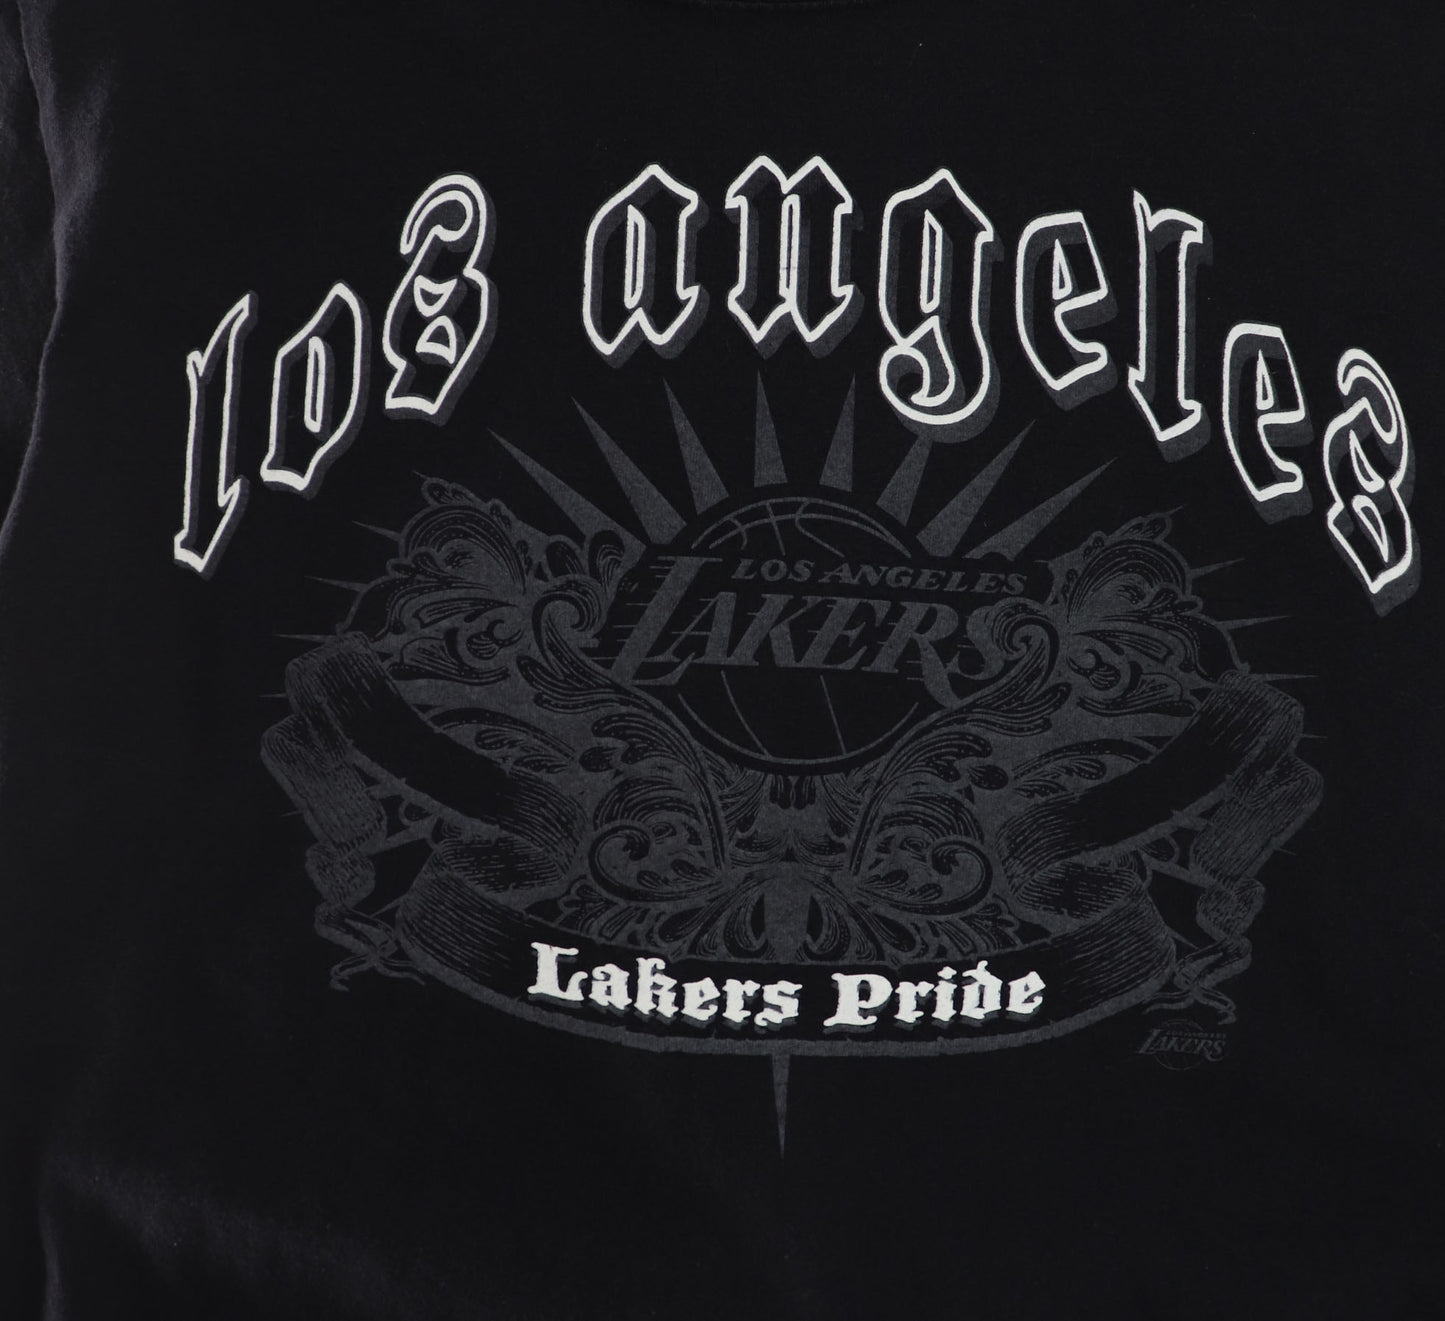 LOS ANGELES LAKERS PRIDE